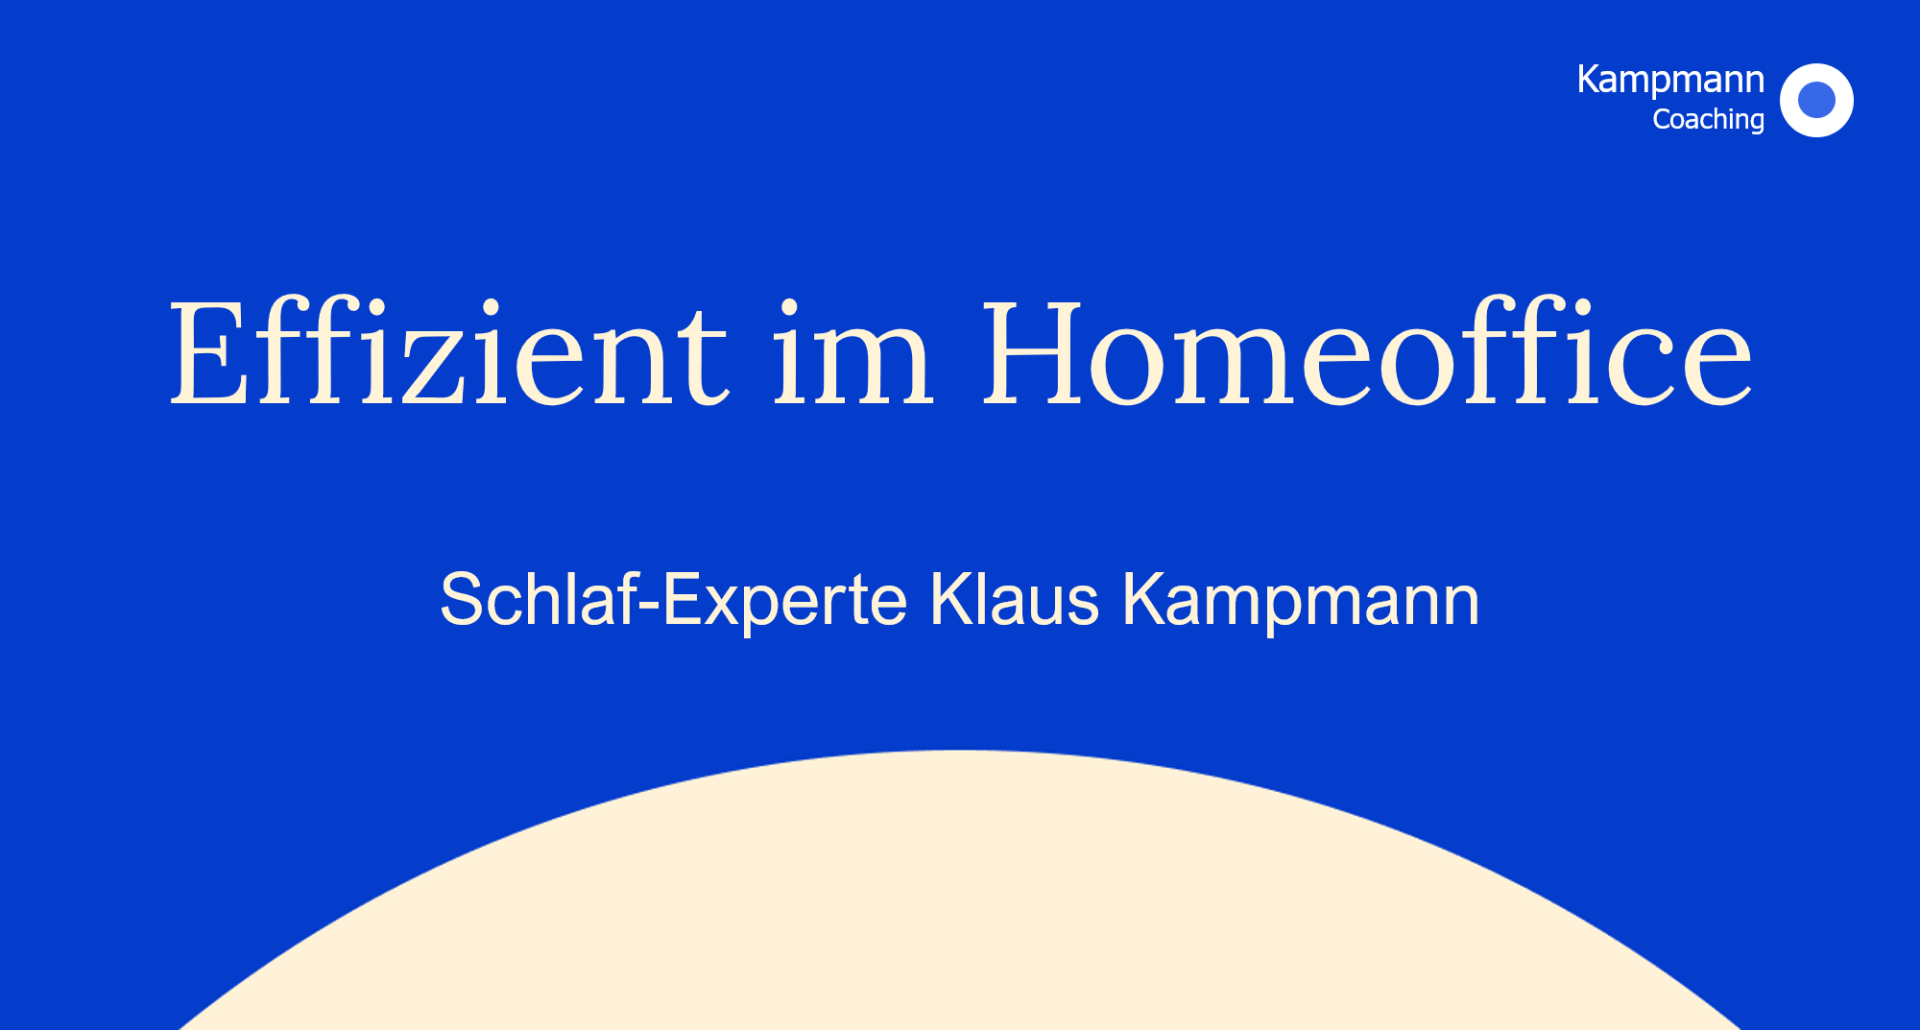 Klaus Kampmann Coach & Trainer, Berlin, Tipps zum Homeoffice und Schlaf